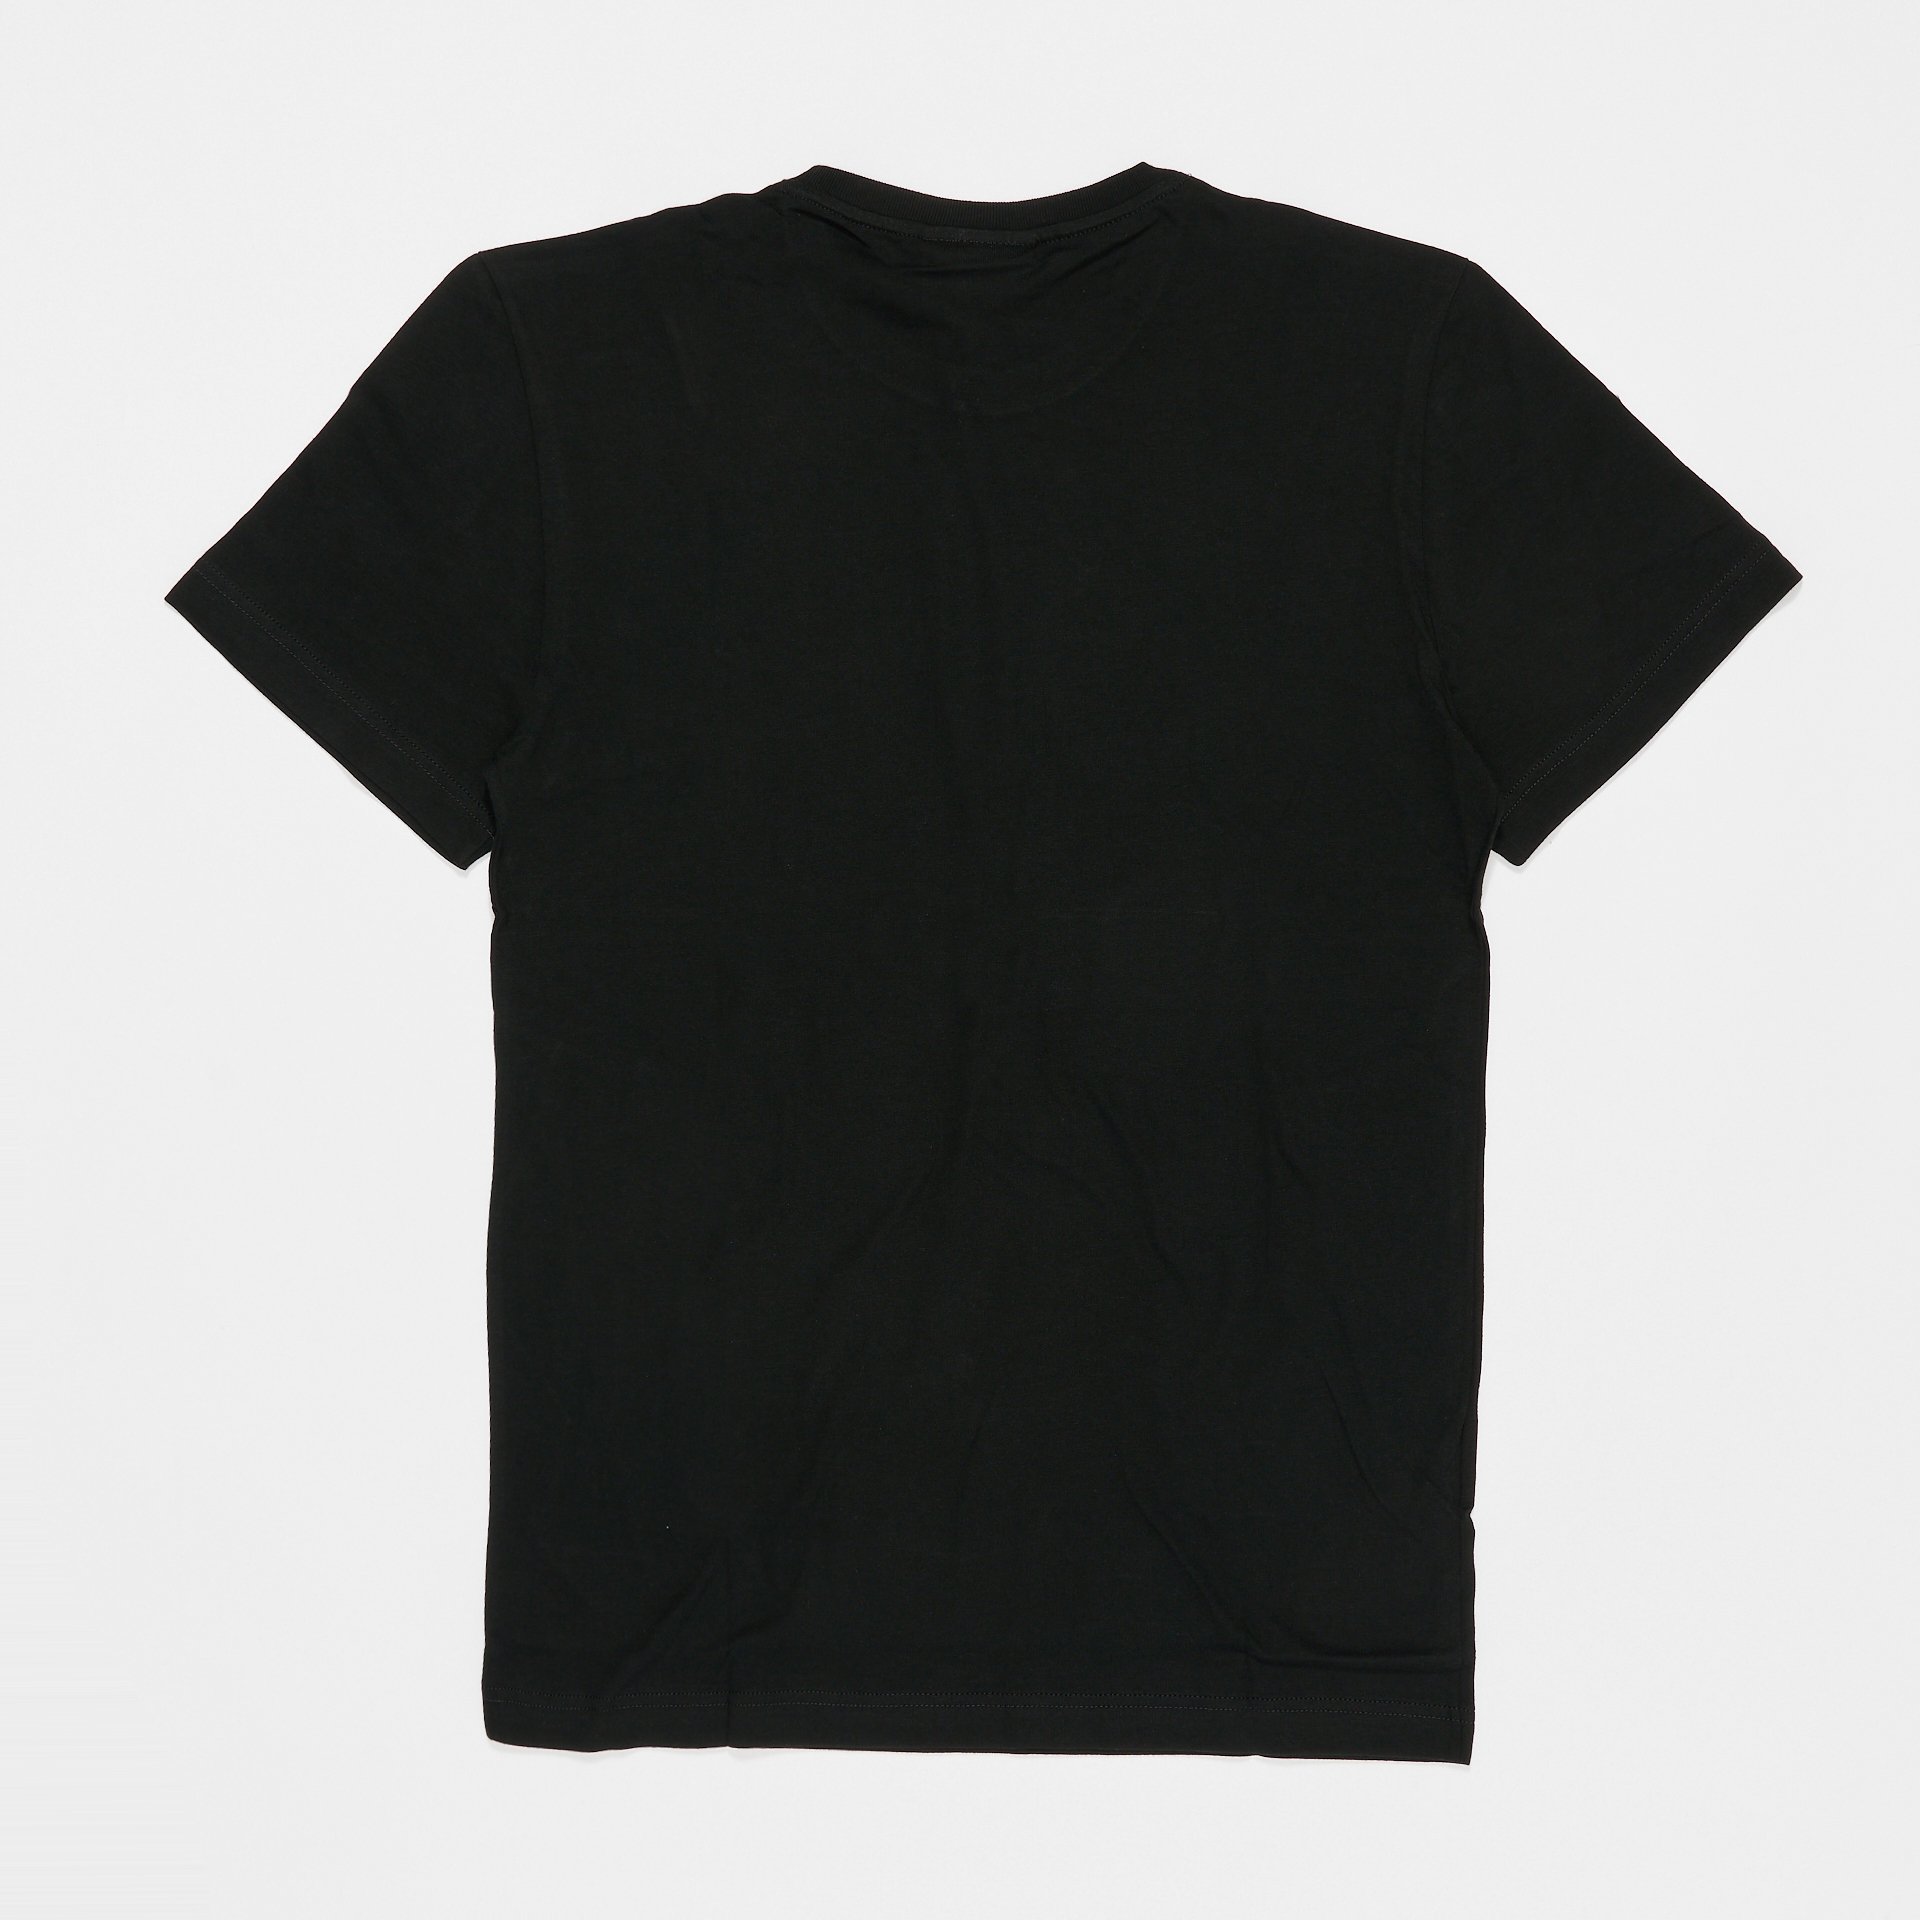 Lacoste T-Shirt Black